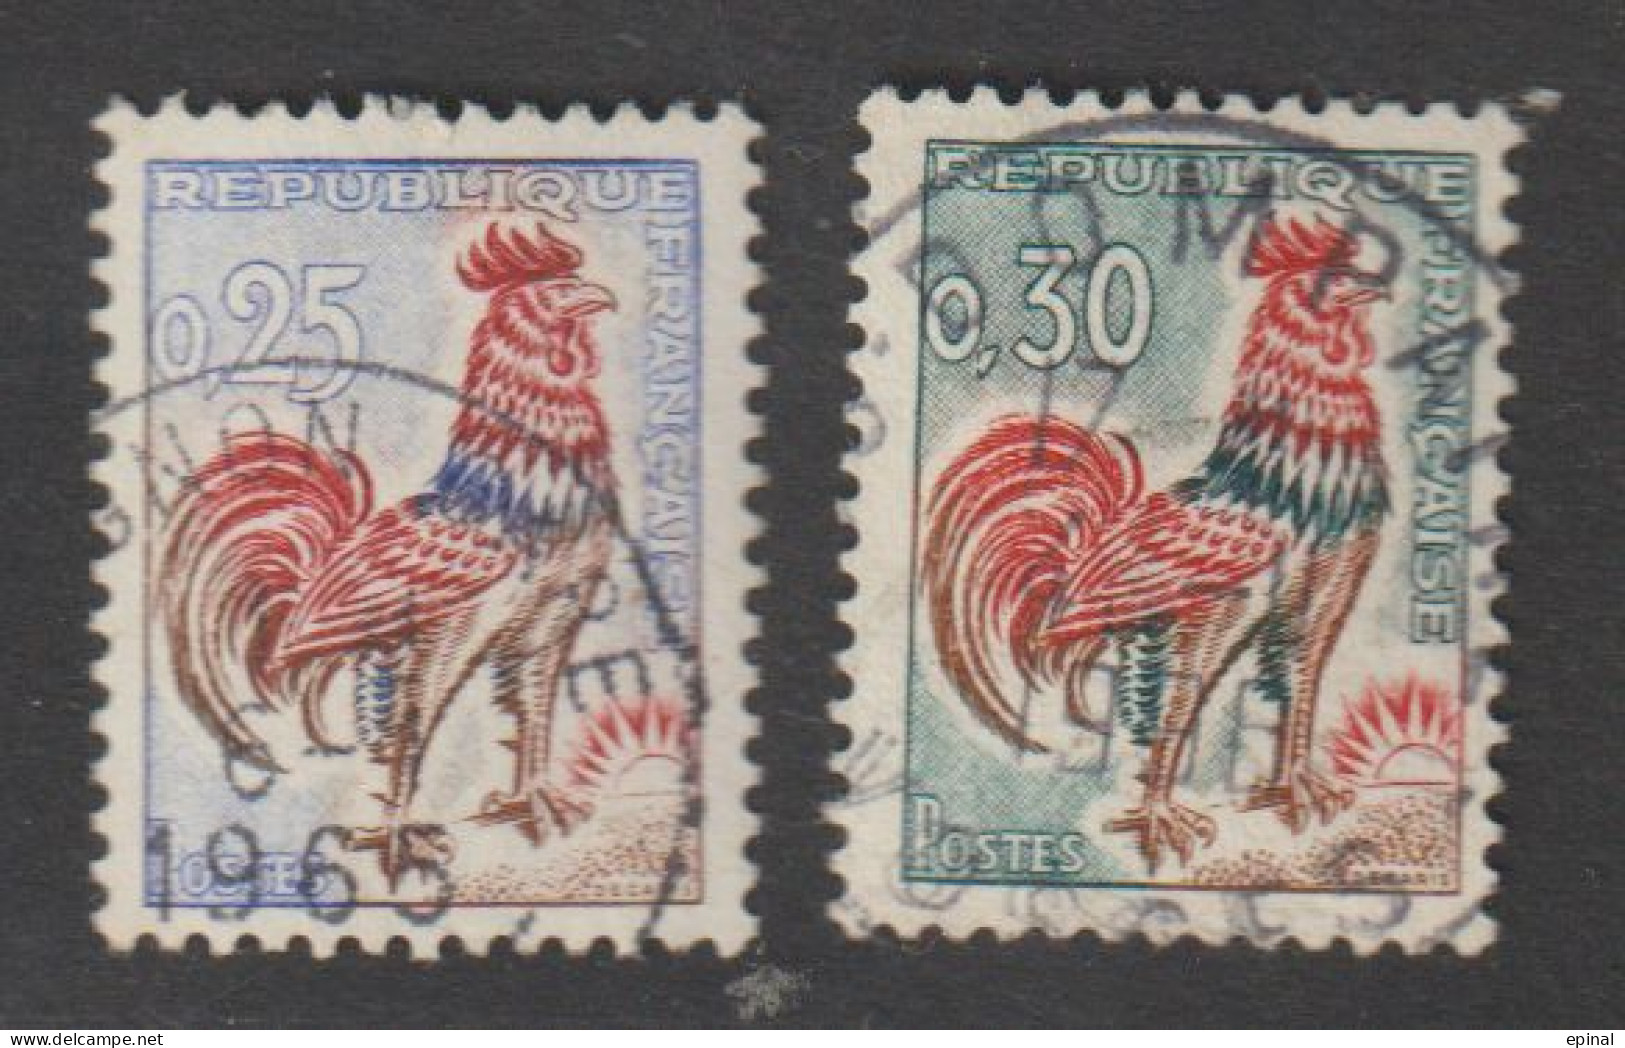 FRANCE : N° 1331 Et 1331A Oblitérés (Type Coq De Decaris) - PRIX FIXE - - 1962-1965 Cock Of Decaris